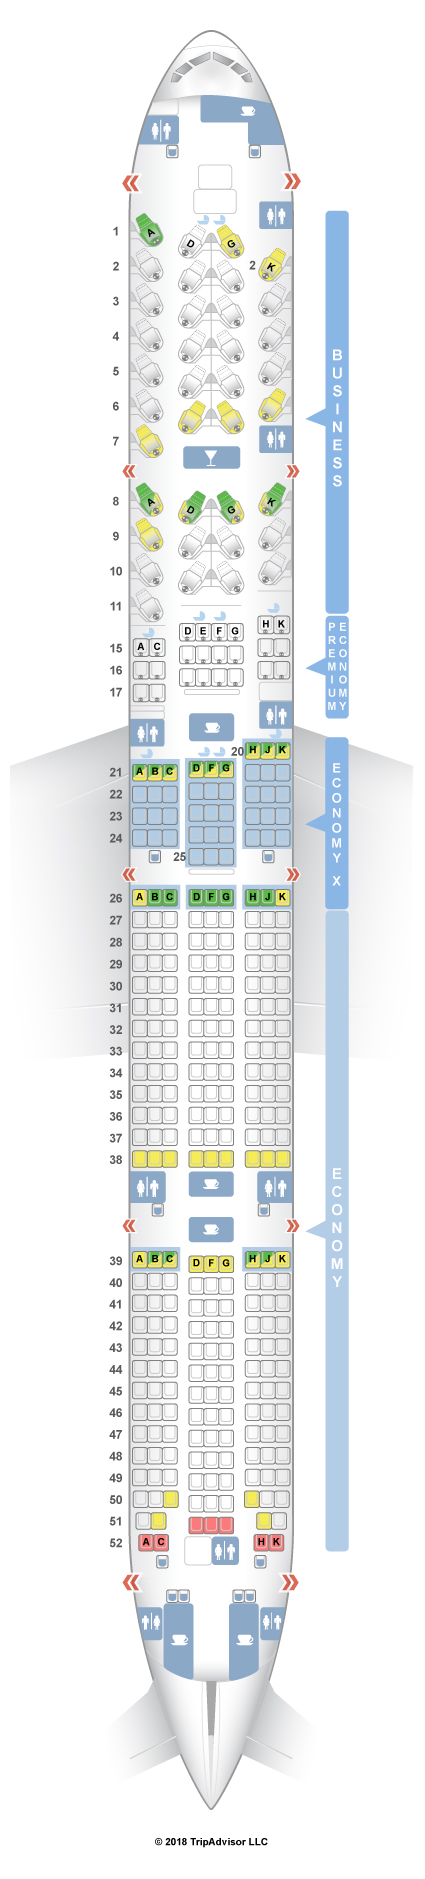 Boeing 777 300er seating map